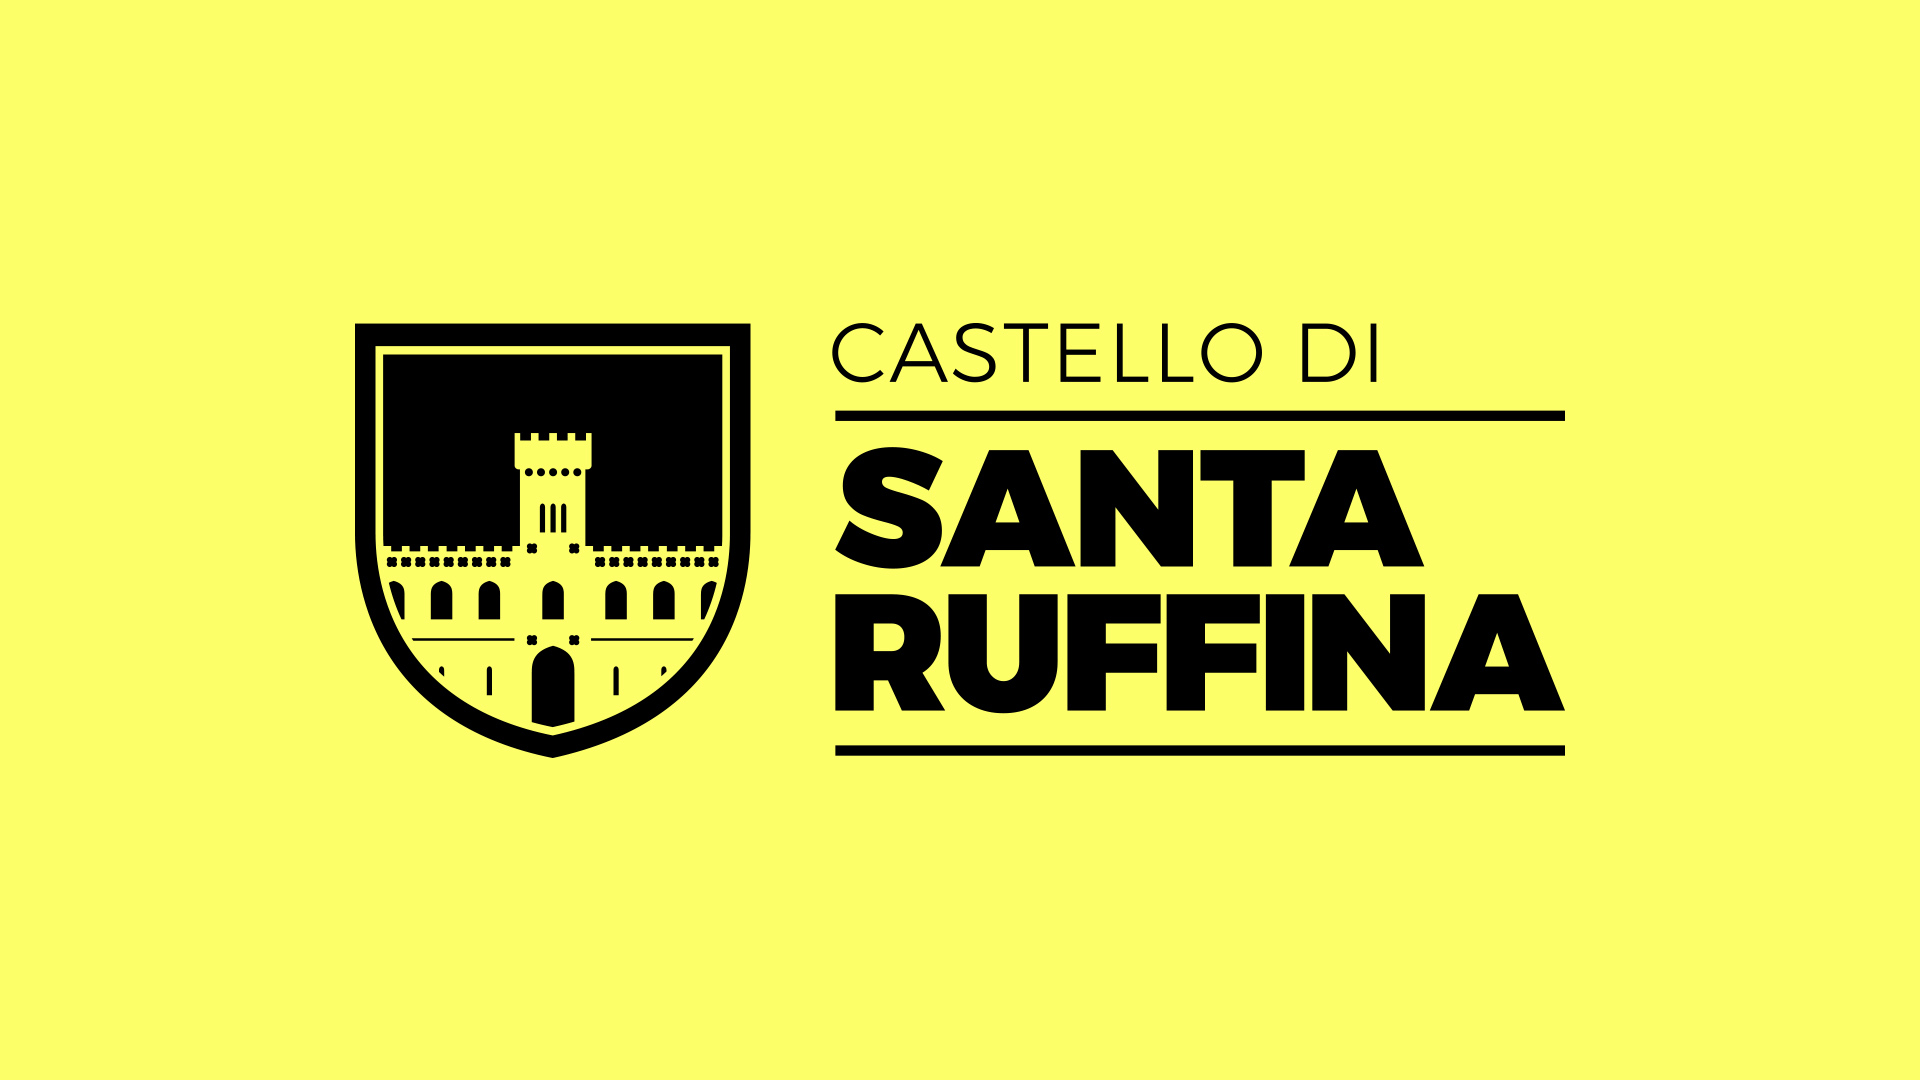 Castello di Santa Ruffina